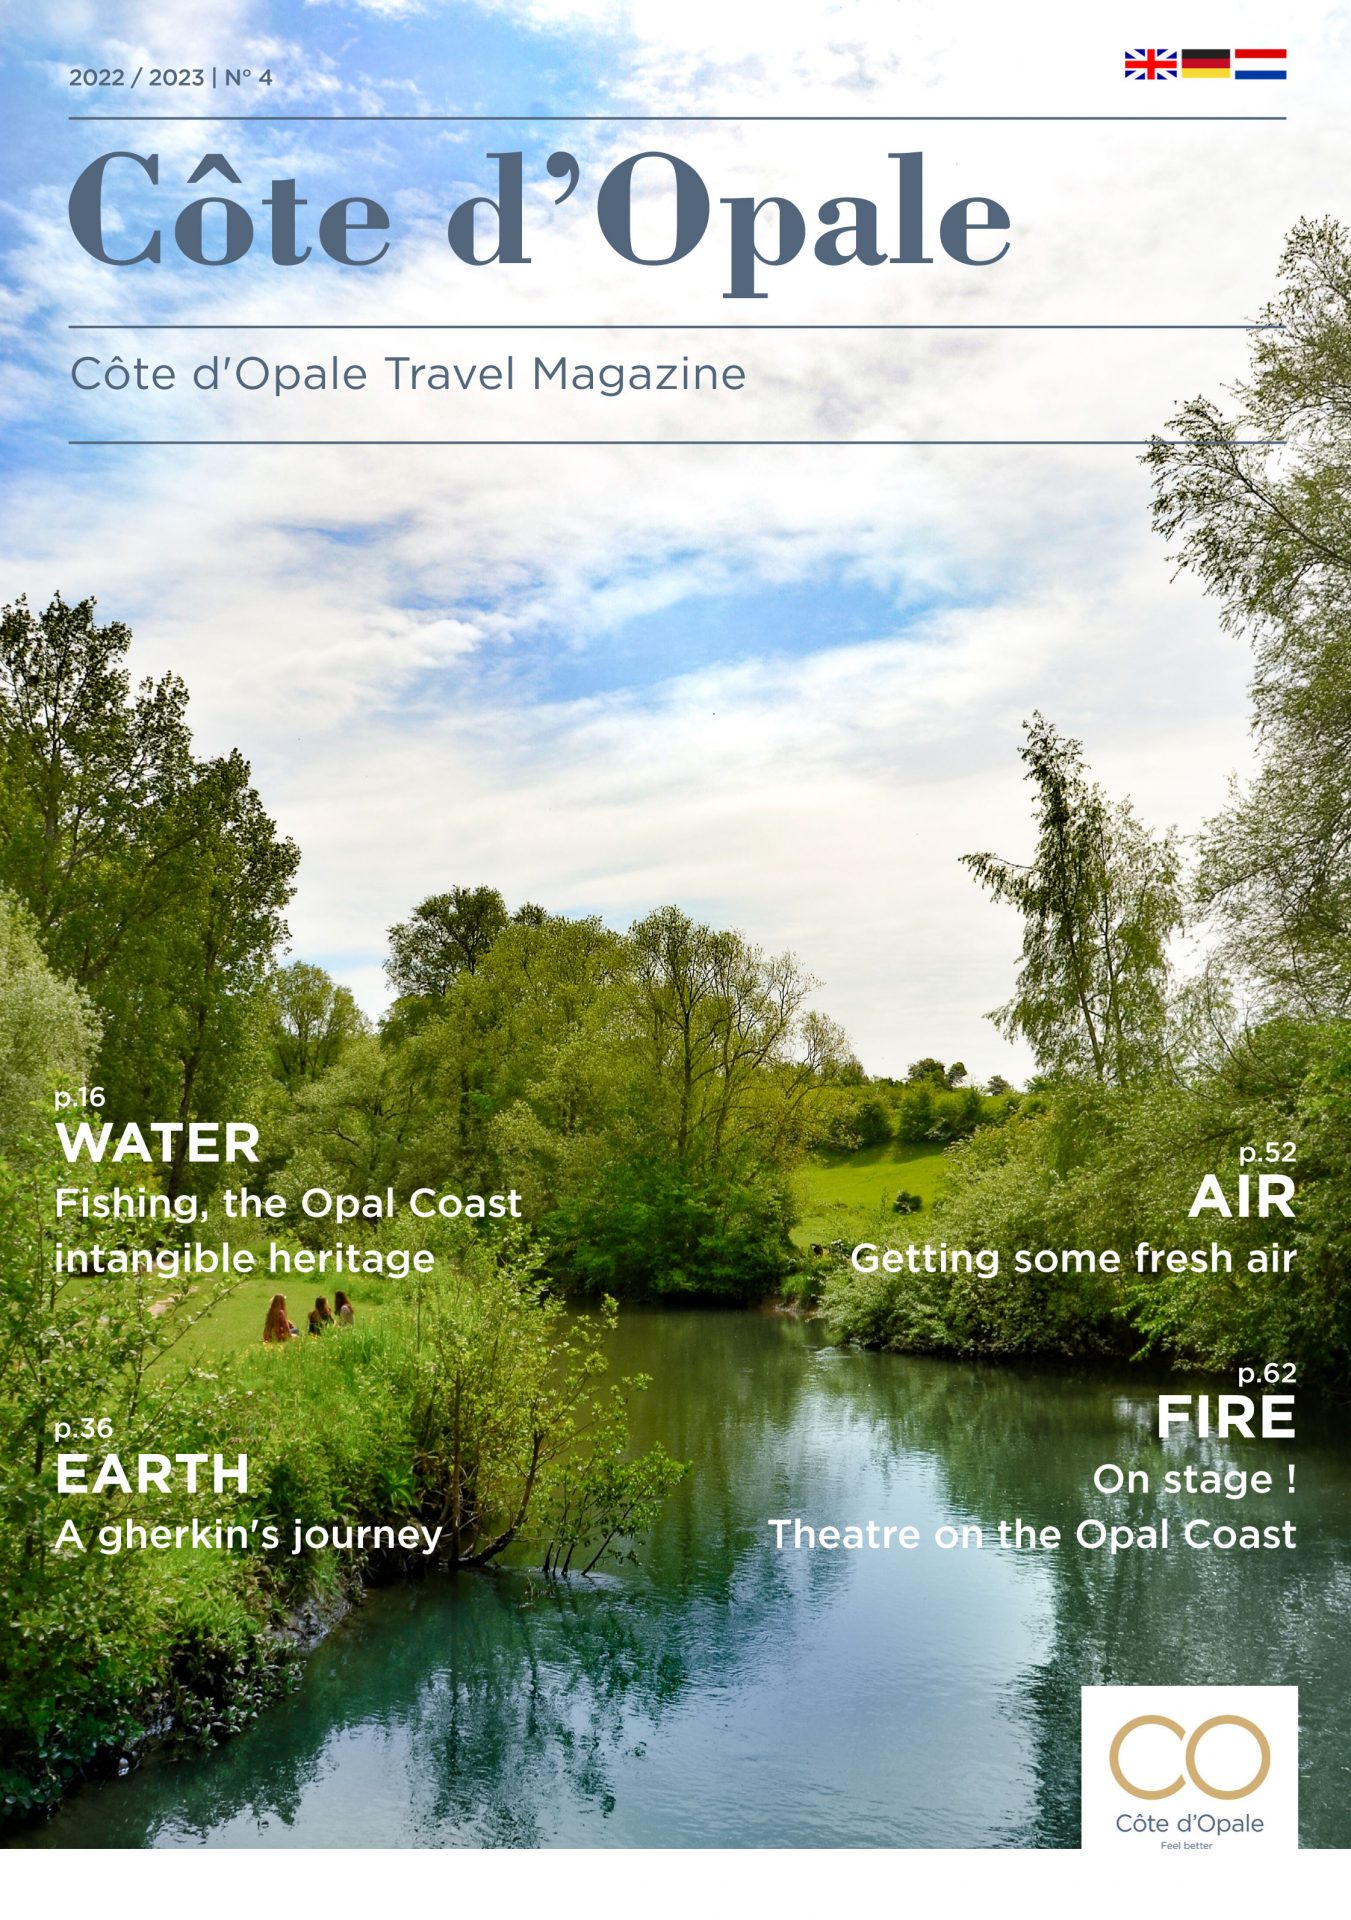 Côte d’Opale – Le Magazine de la destination Pour être Mieux (version étrangère) – Edition 2022/2023 N°4